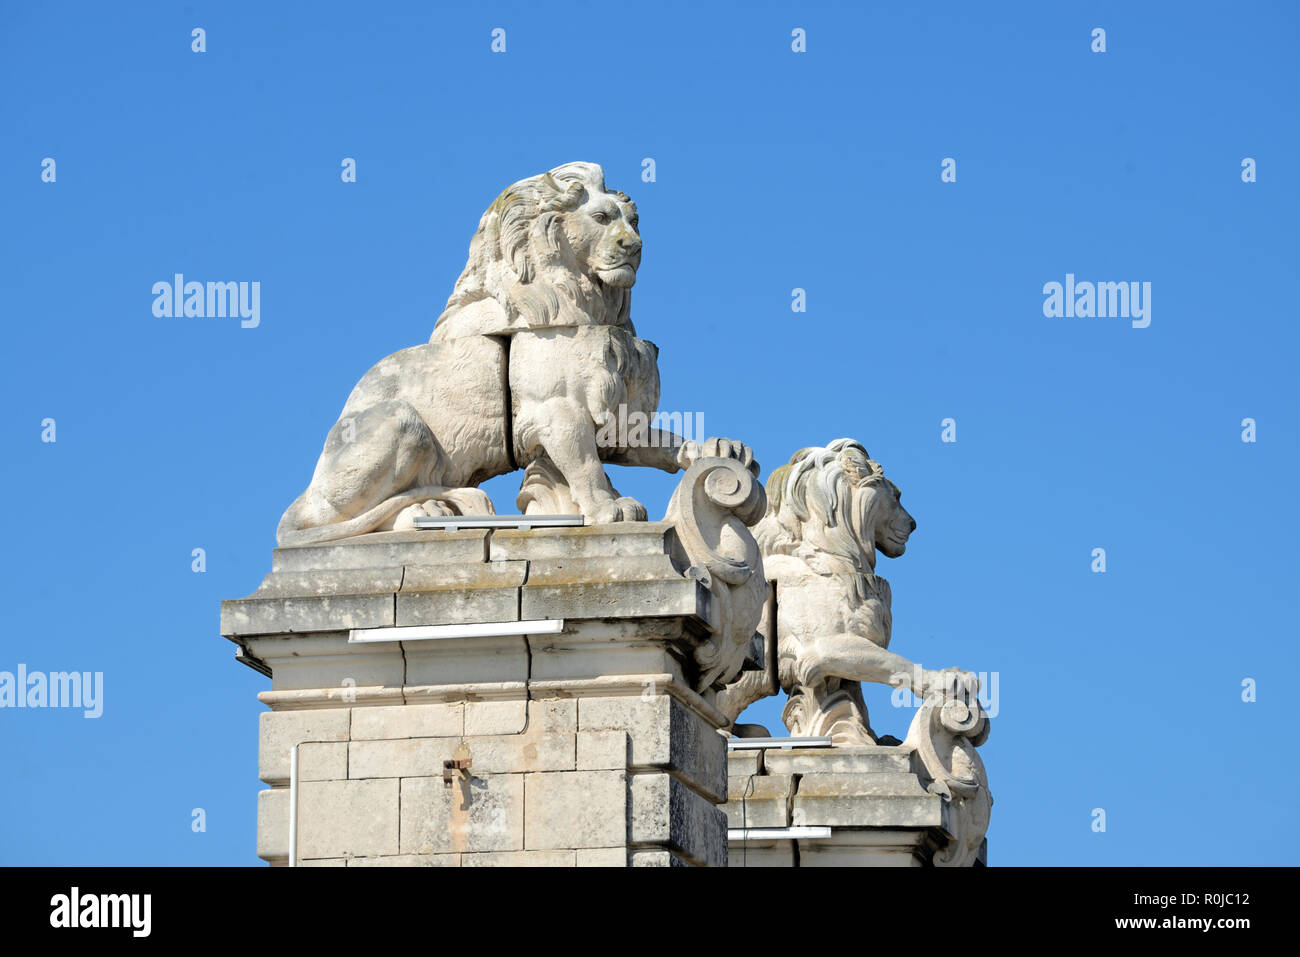 Les lions en pierre sculptée au sommet de colonnes ou de l'ancien pont suspendu sur le fleuve Rhône à Arles Provence France Banque D'Images